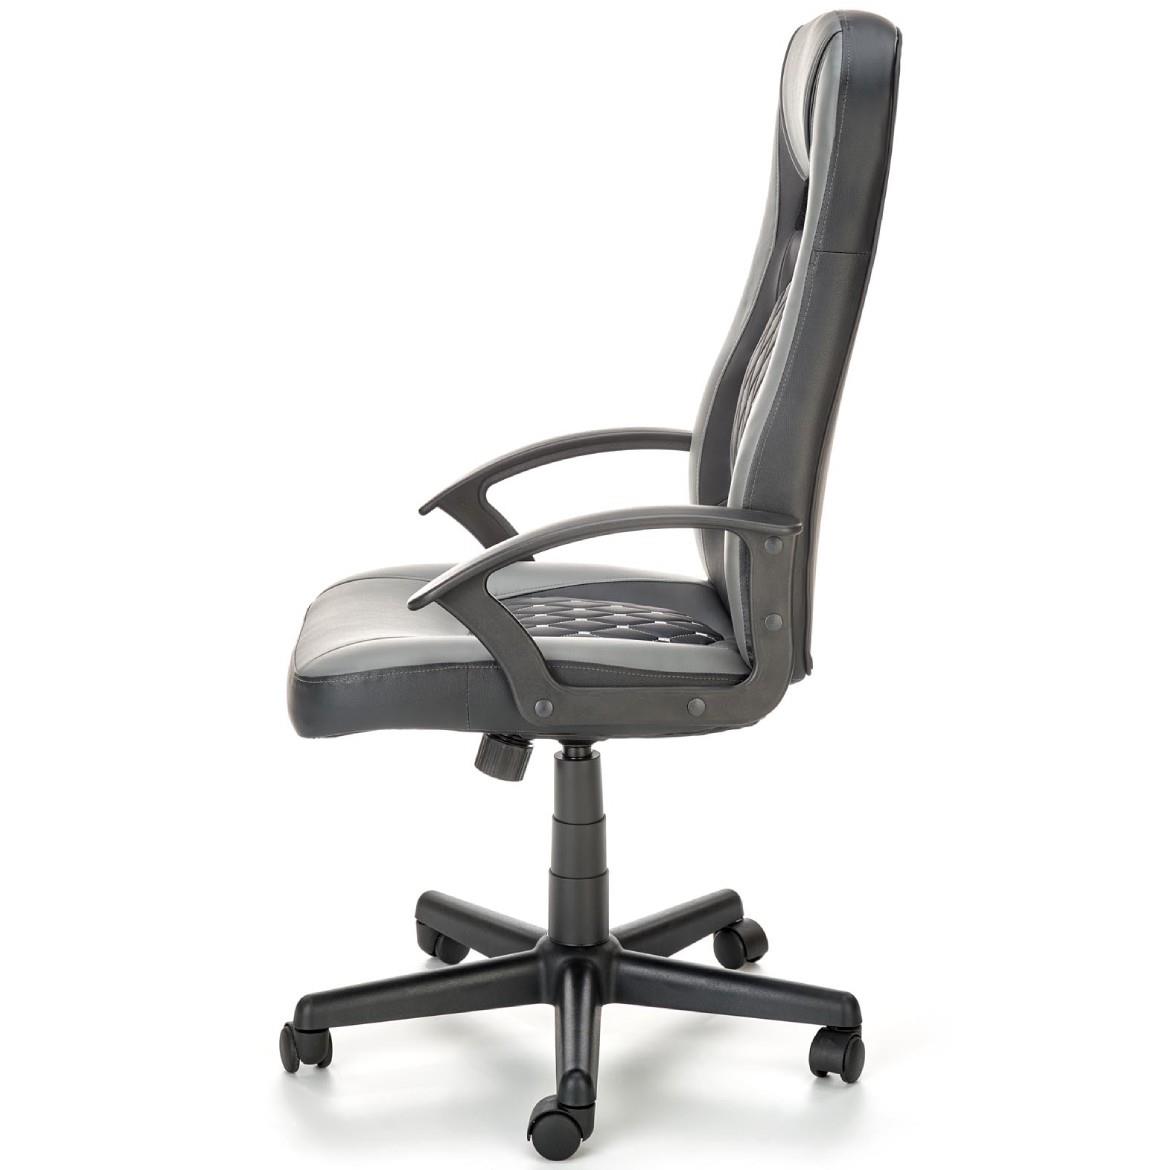 Castano kancelarijska fotelja 60x64x117 cm  siva/crna